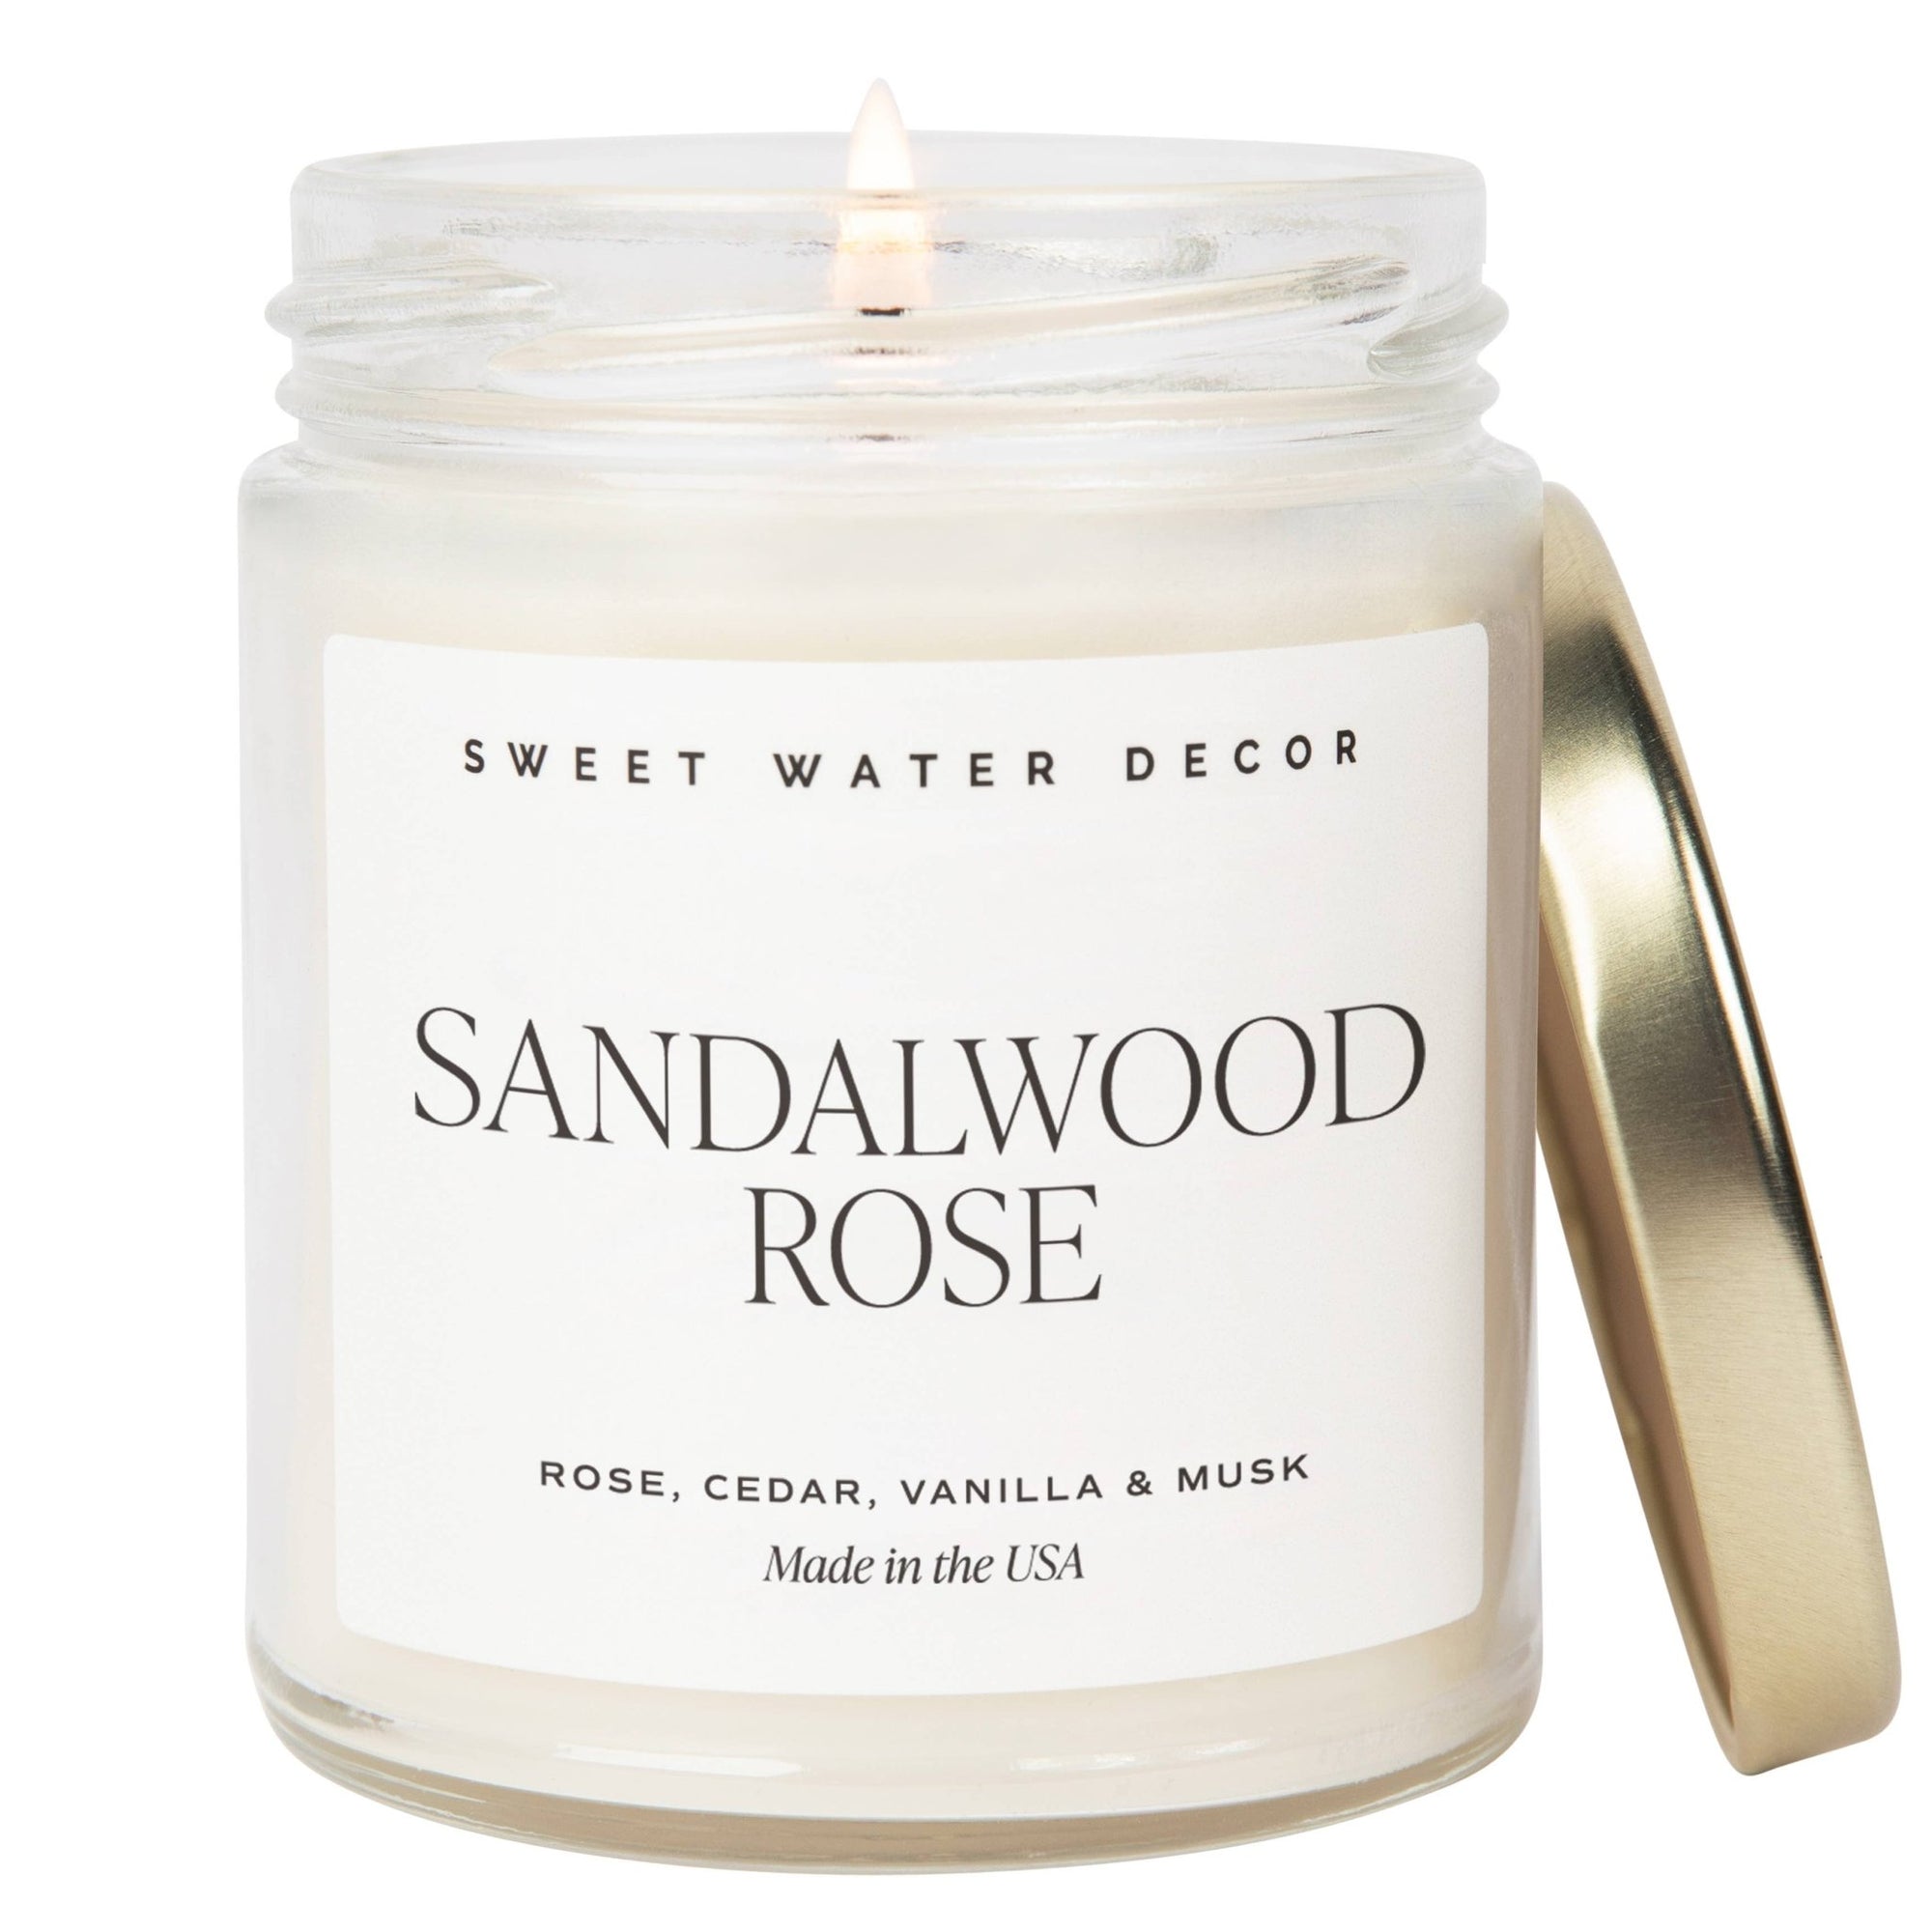 Sandalwood Rose 9 oz Soy Candle - Home Decor & Gifts - Olivia Macaron